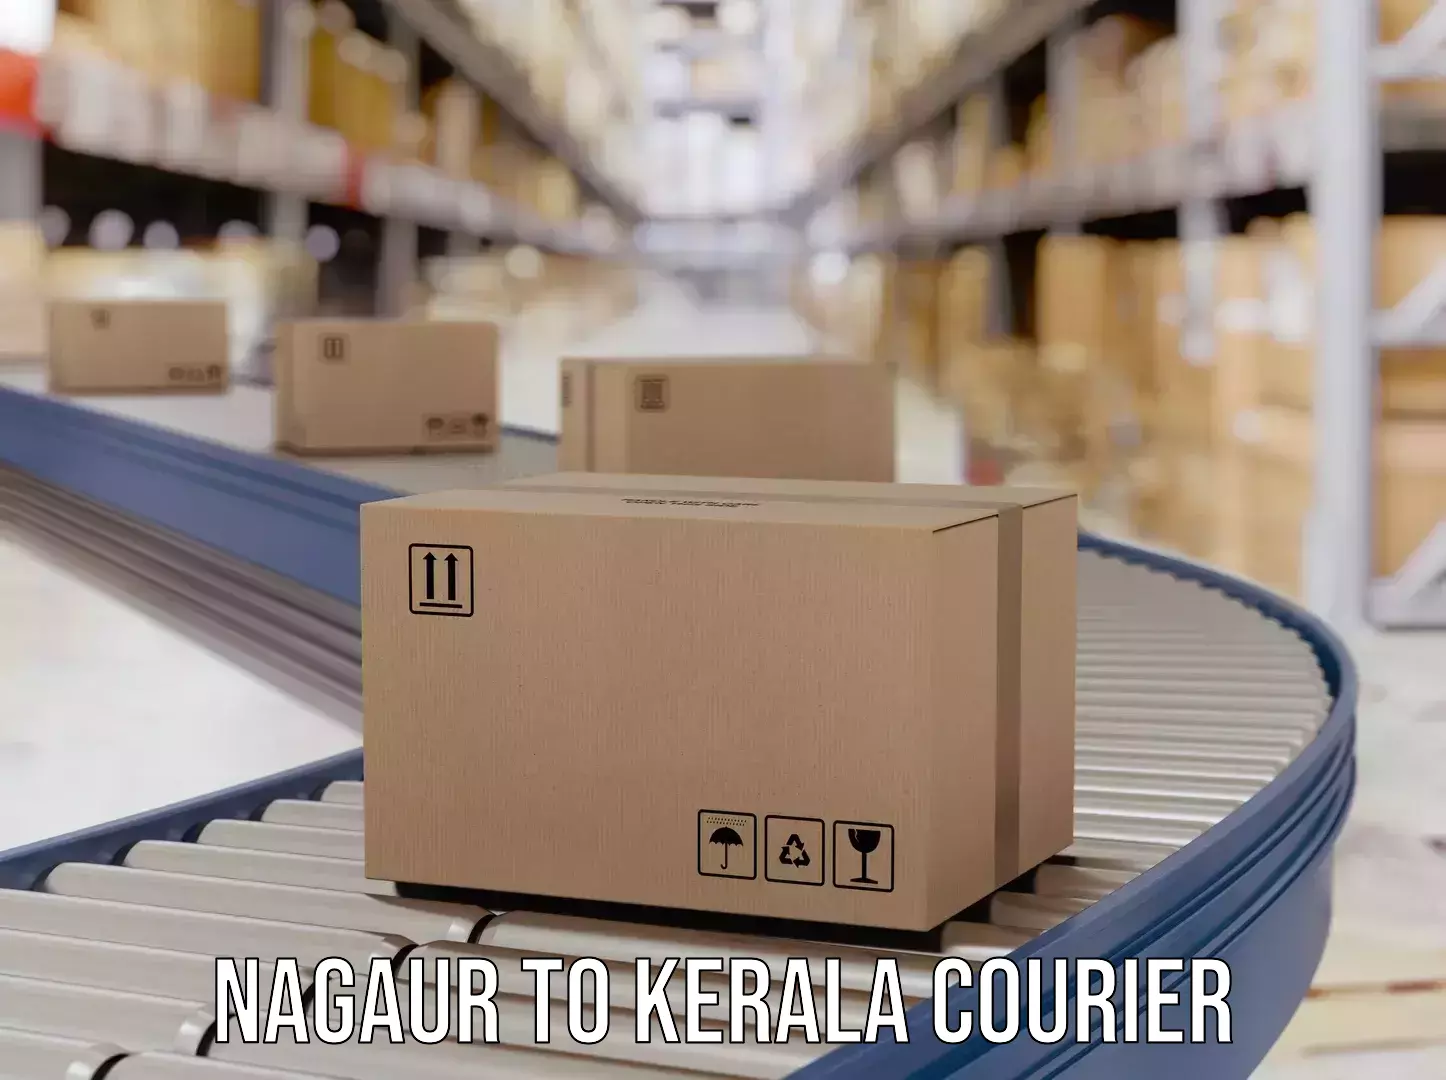 Cost-effective courier options Nagaur to Adur Kla